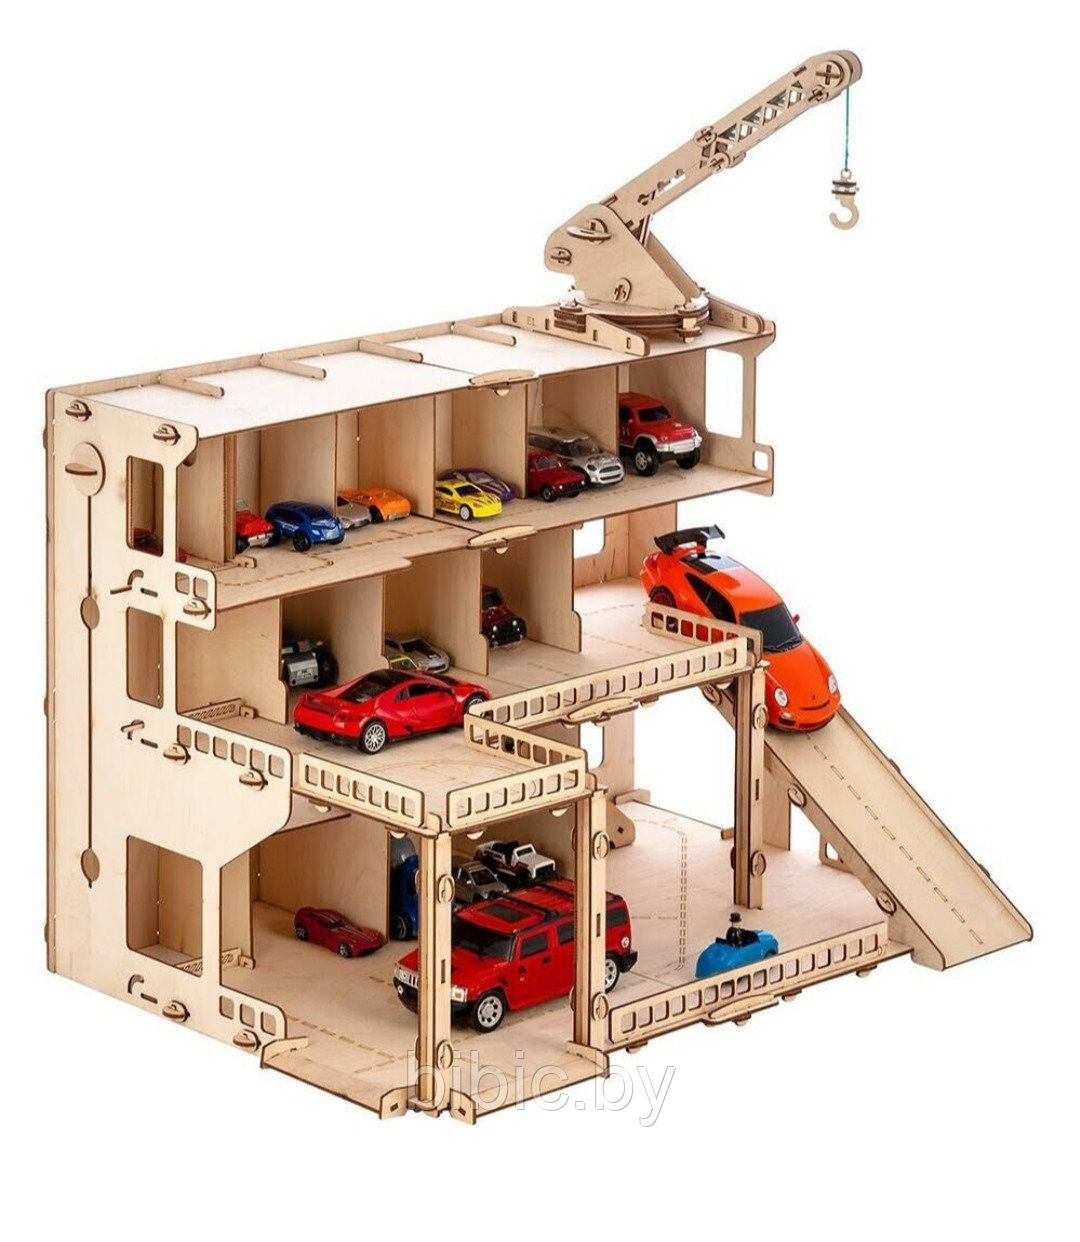 Деревянный конструктор парковка – Мегапарк, 246 деталей, Polly, фото 1